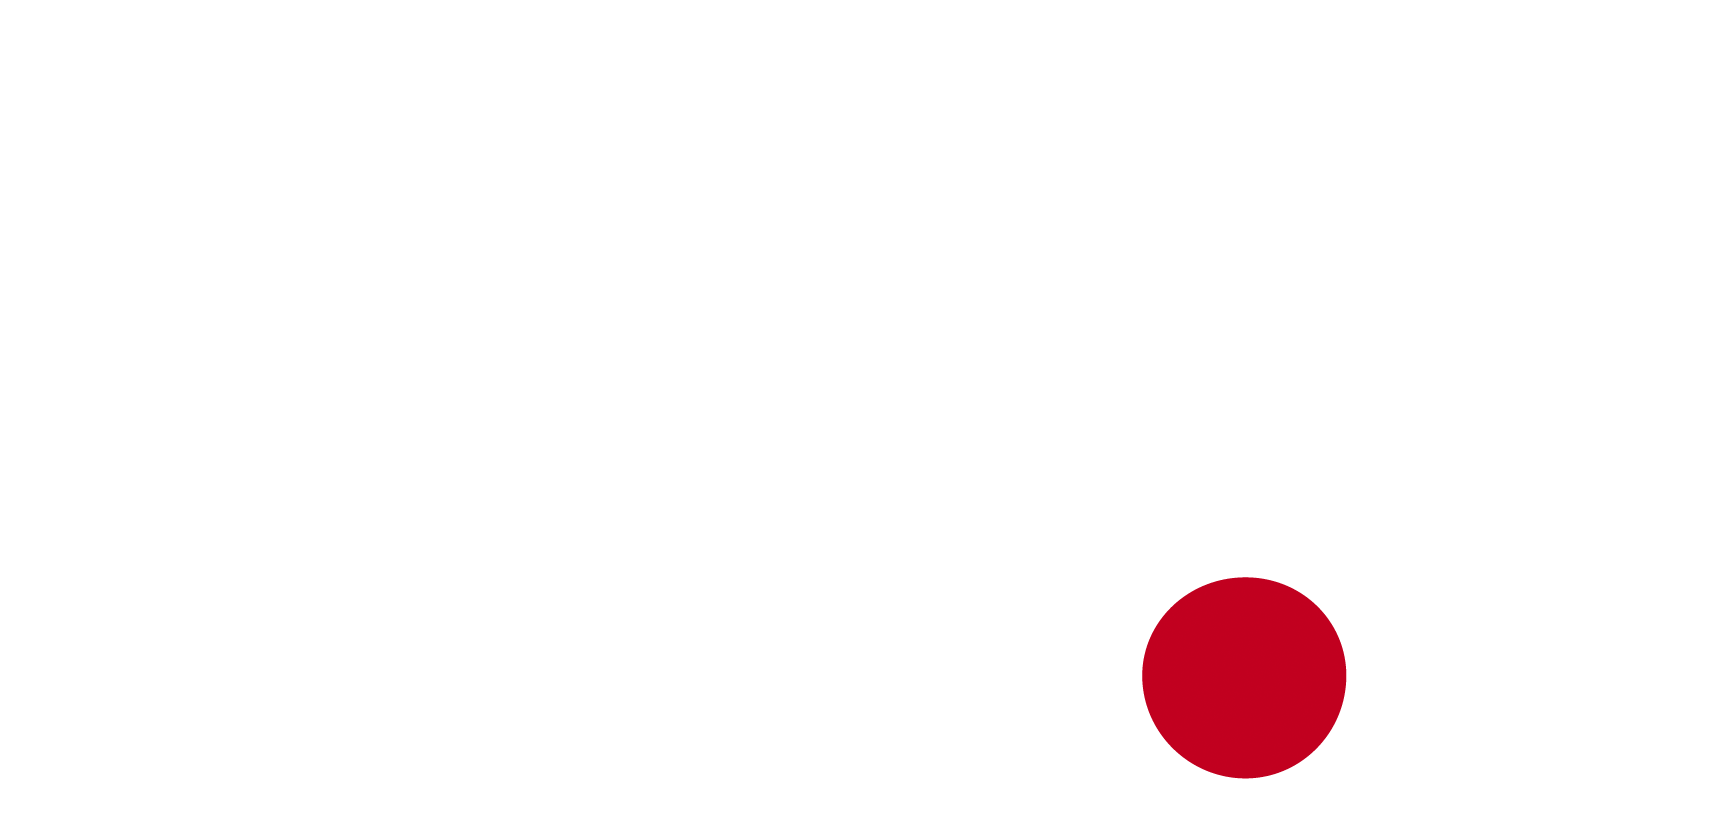 Kickers Logo - Kickers Football